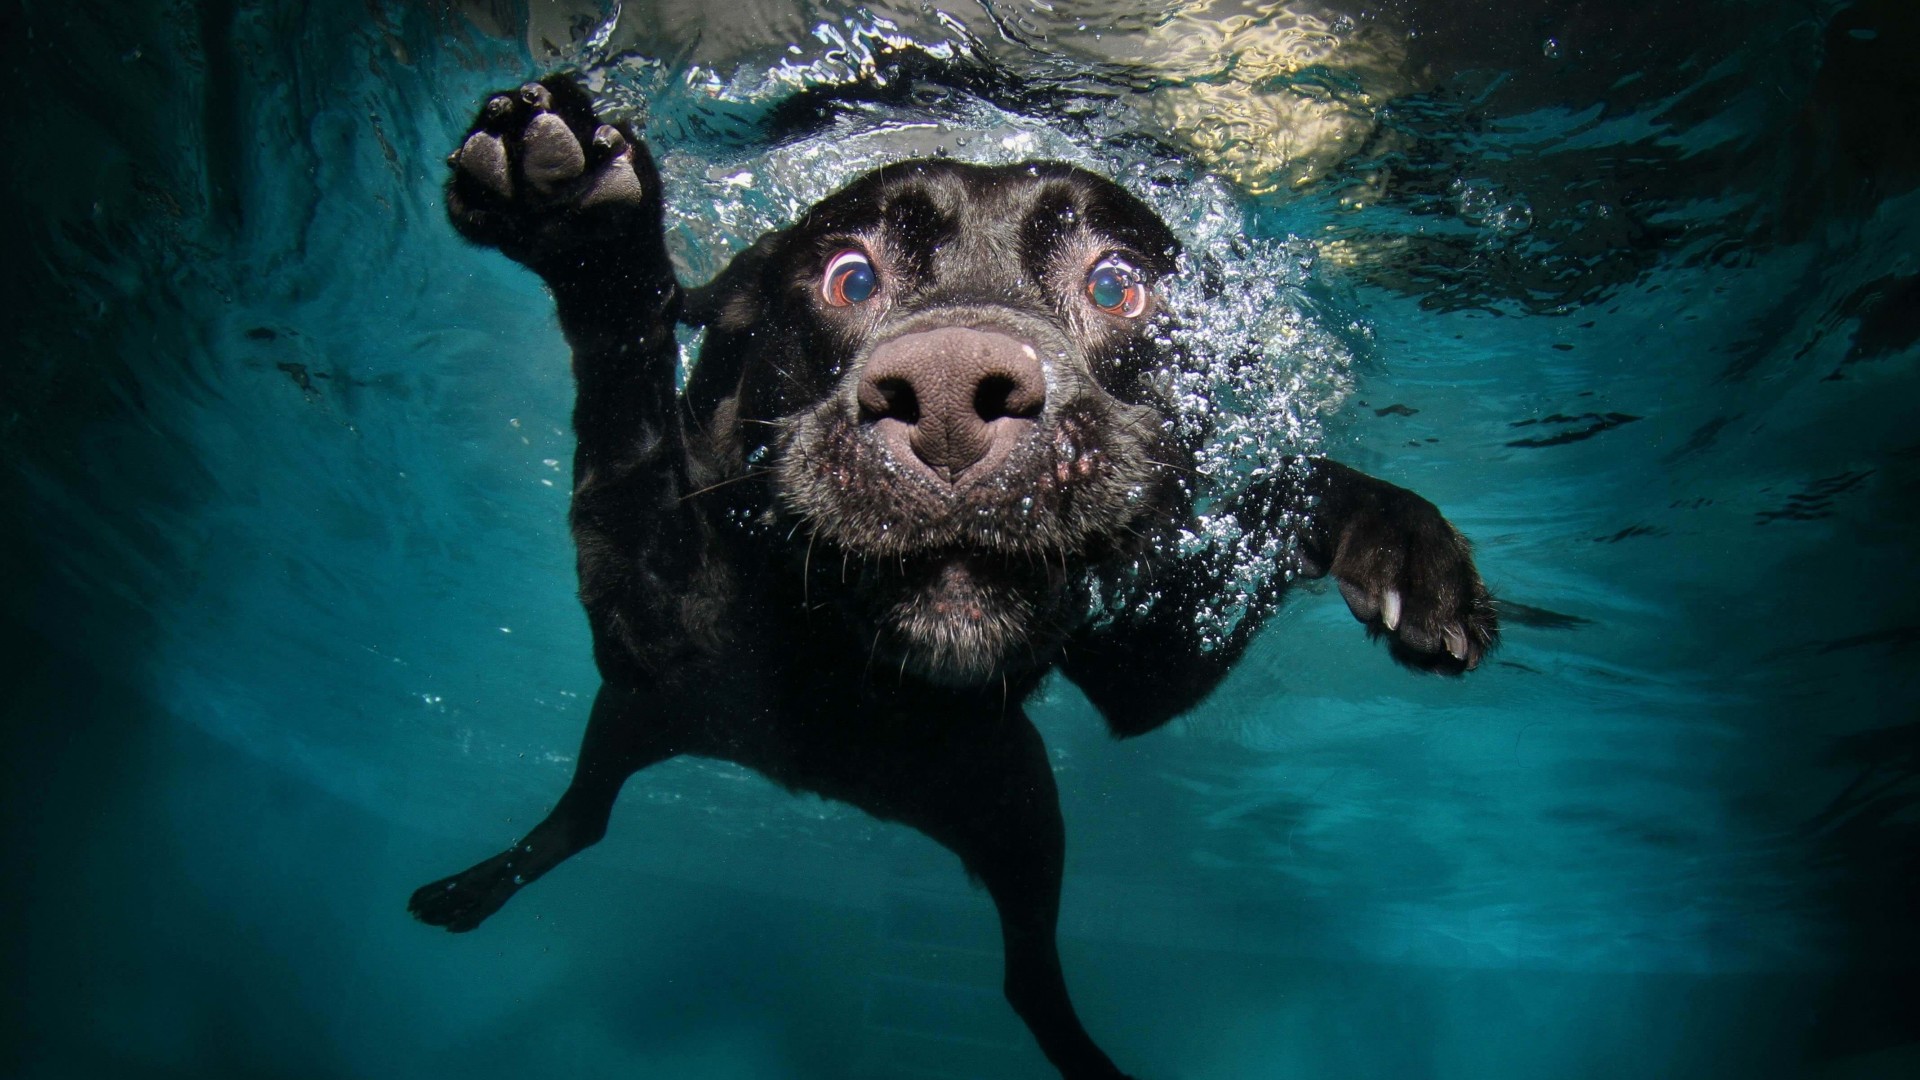 Underwater Dog Wallpaper for Desktop 1920x1080